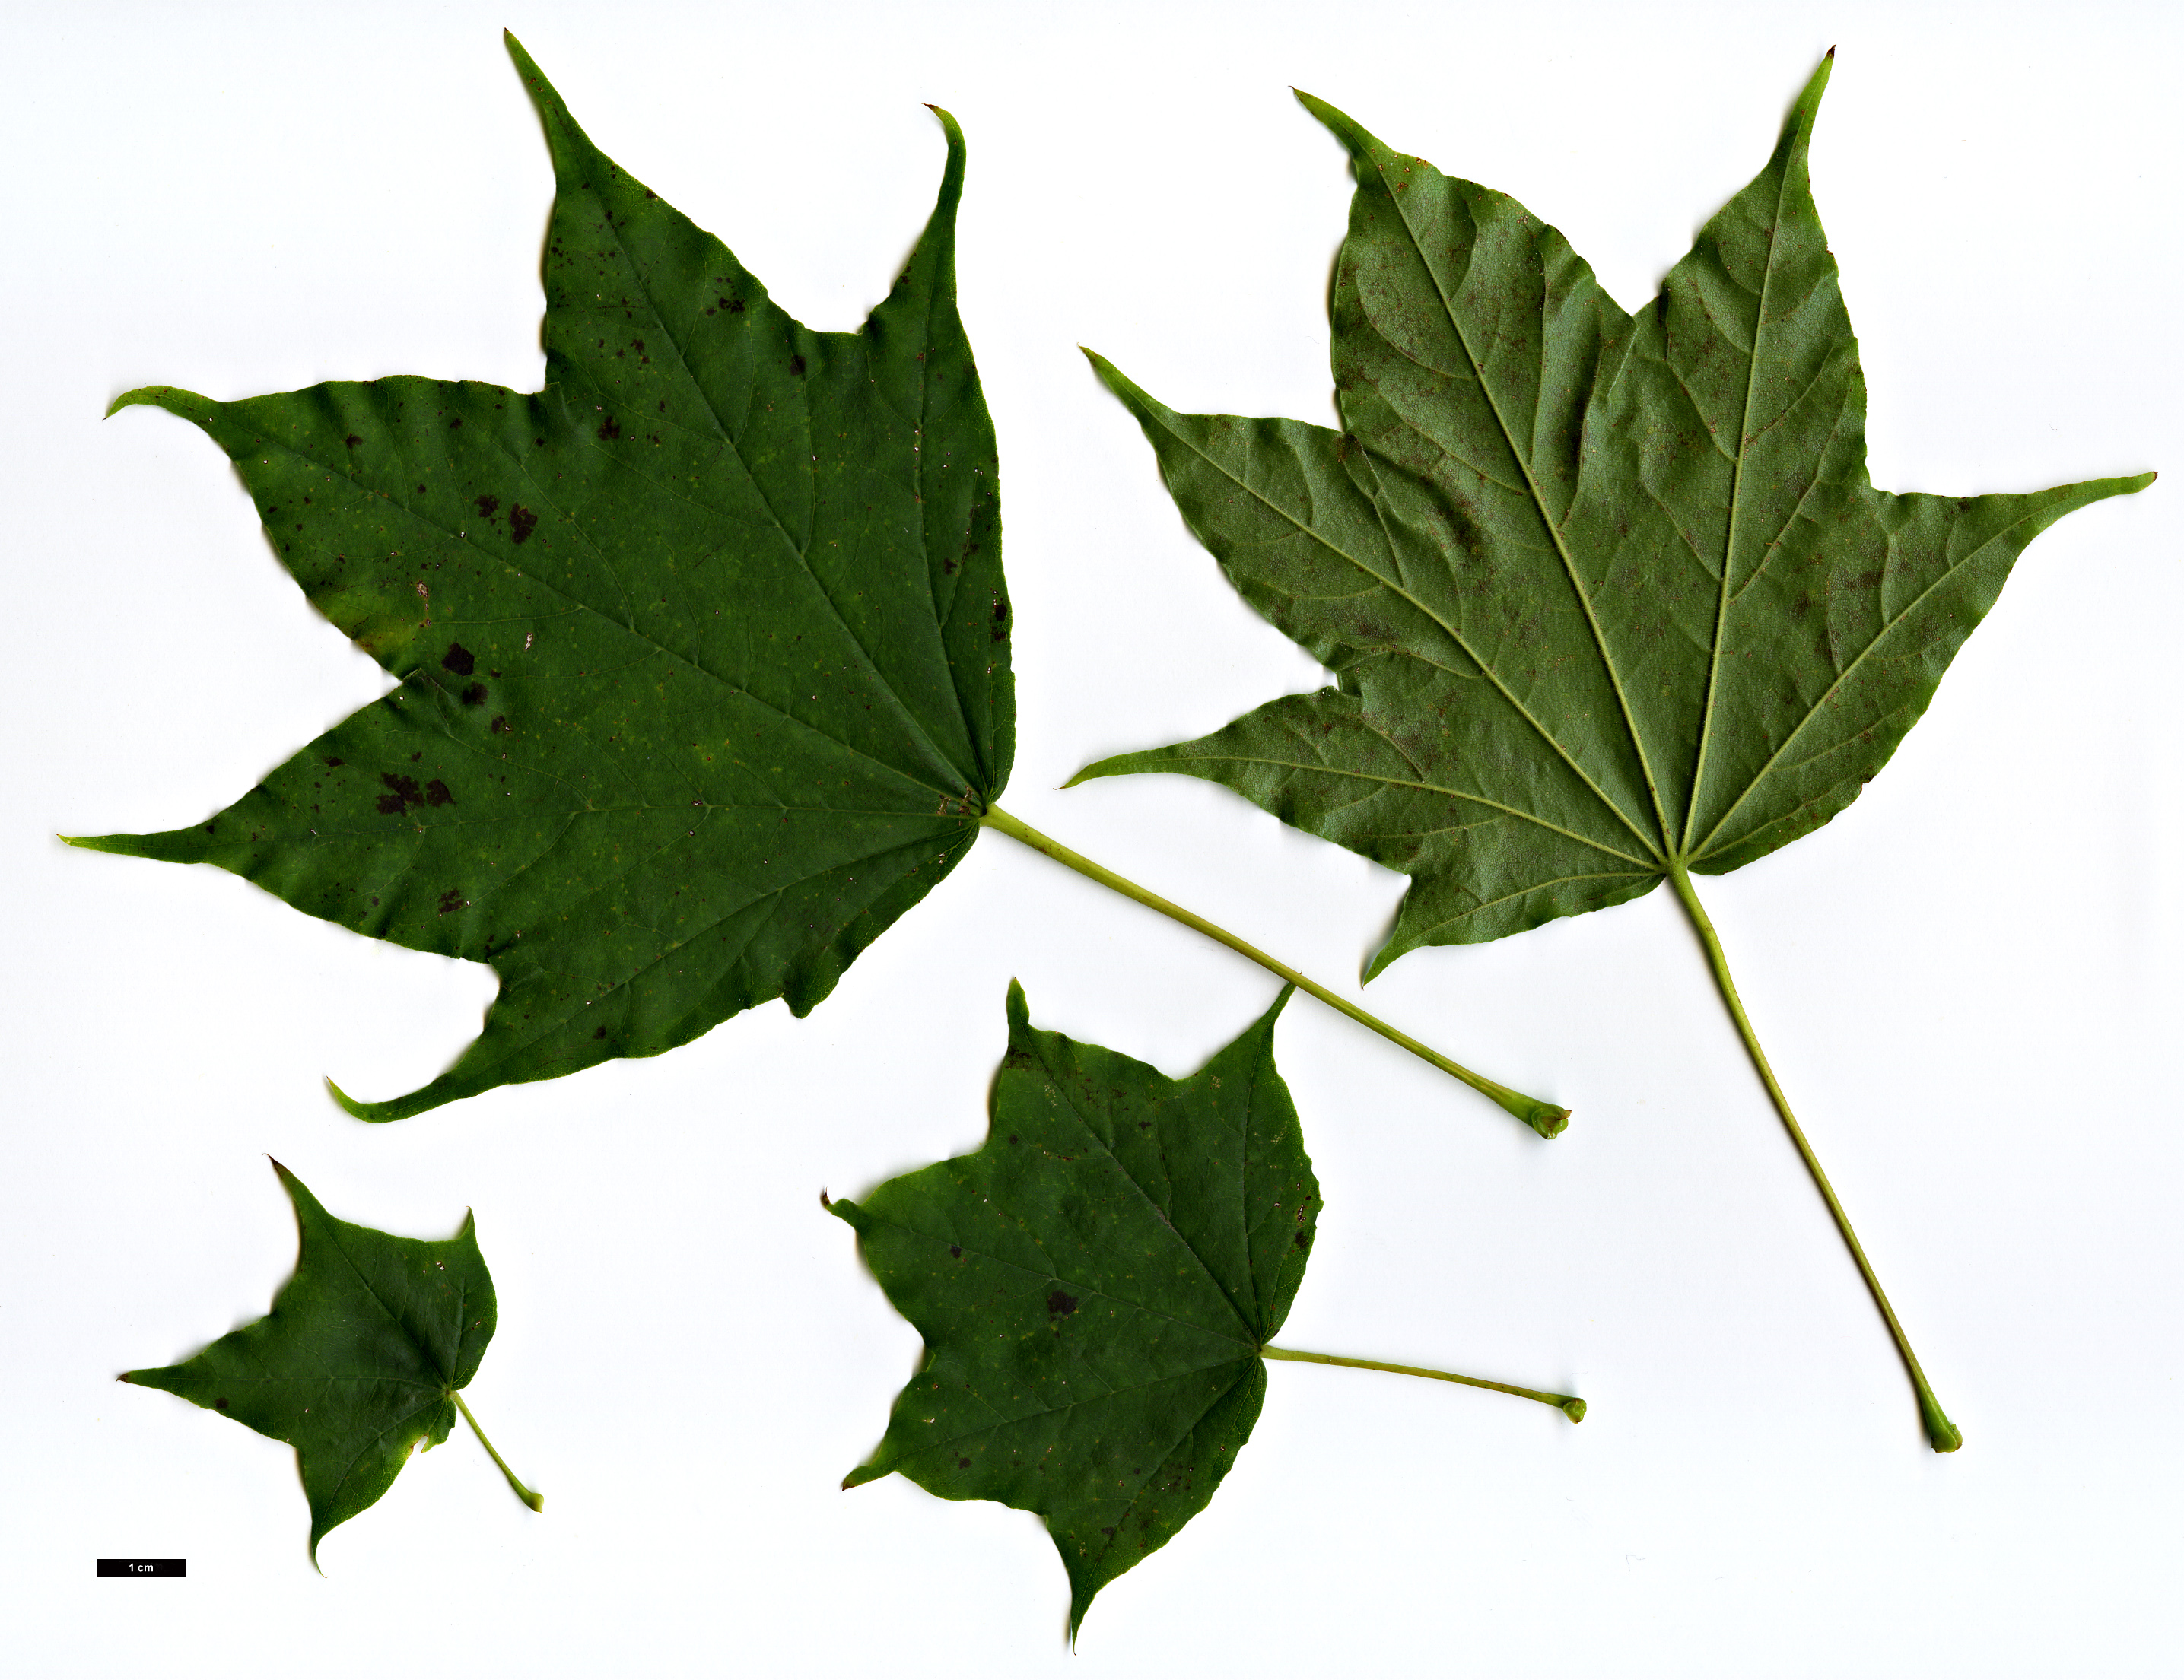 High resolution image: Family: Sapindaceae - Genus: Acer - Taxon: pictum - SpeciesSub: f. ambiguum